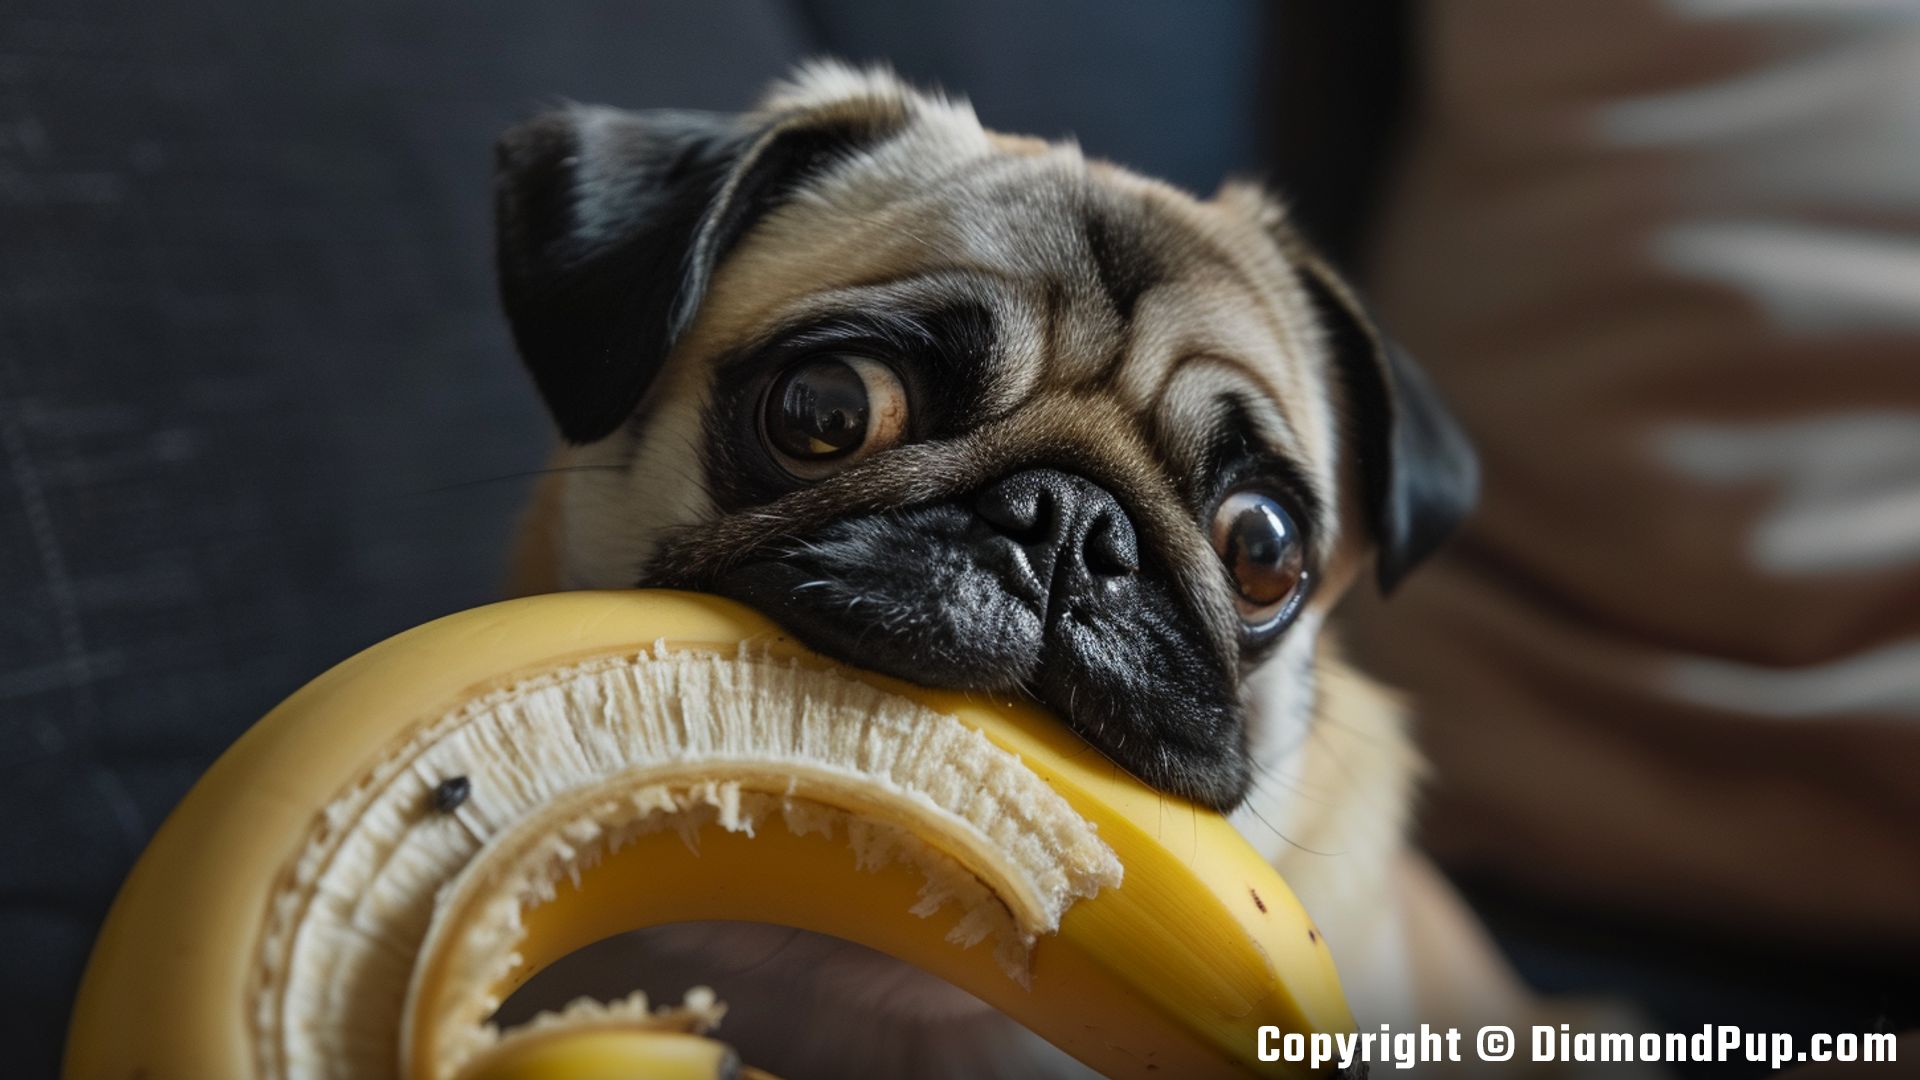 Photograph of an Adorable Pug Snacking on Banana